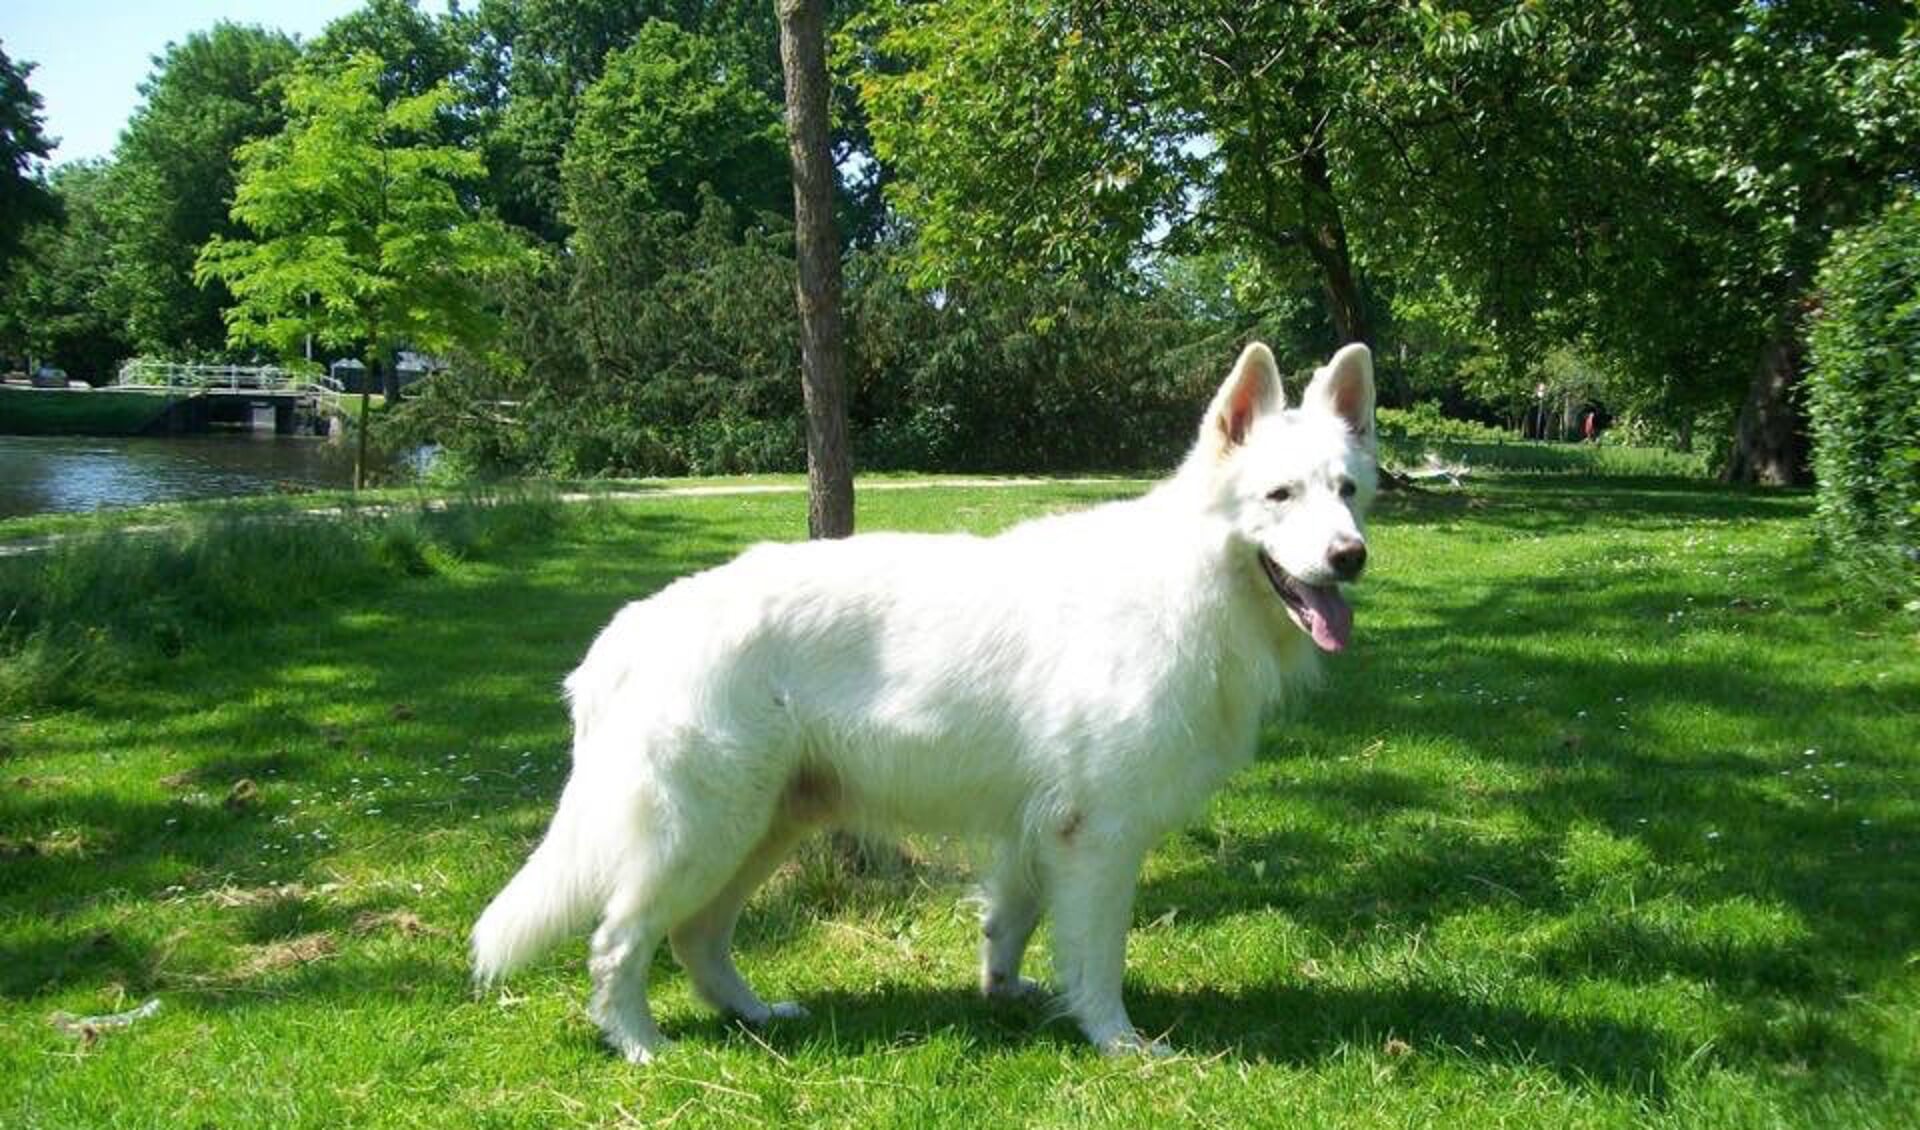 De witte herder is momenteel een heel populaire hond. 